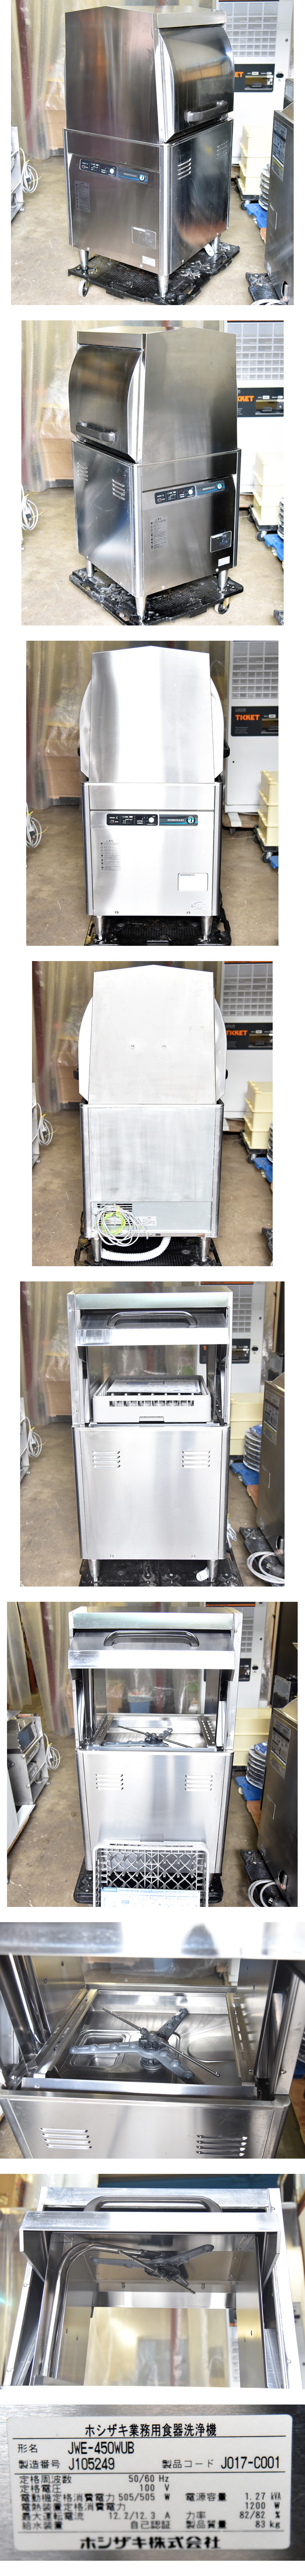 中古 食器洗浄機 業務用 送料別途見積 JWE-450WUB 幅600×奥行600×高さ1350 ホシザキ